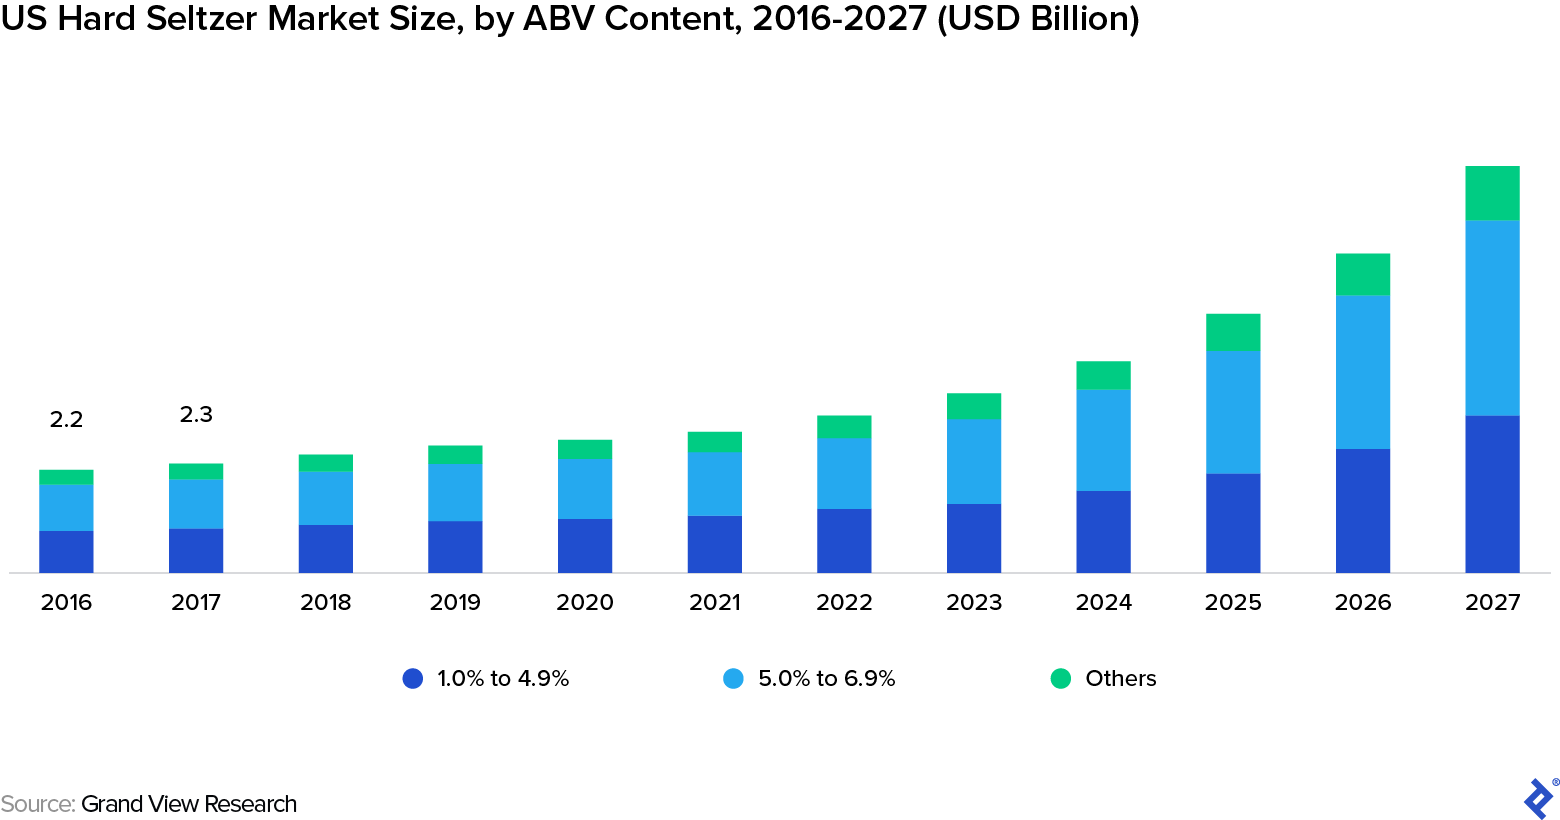 2016-2027年美国硬苏打水市场规模（按ABV含量计）（十亿美元）